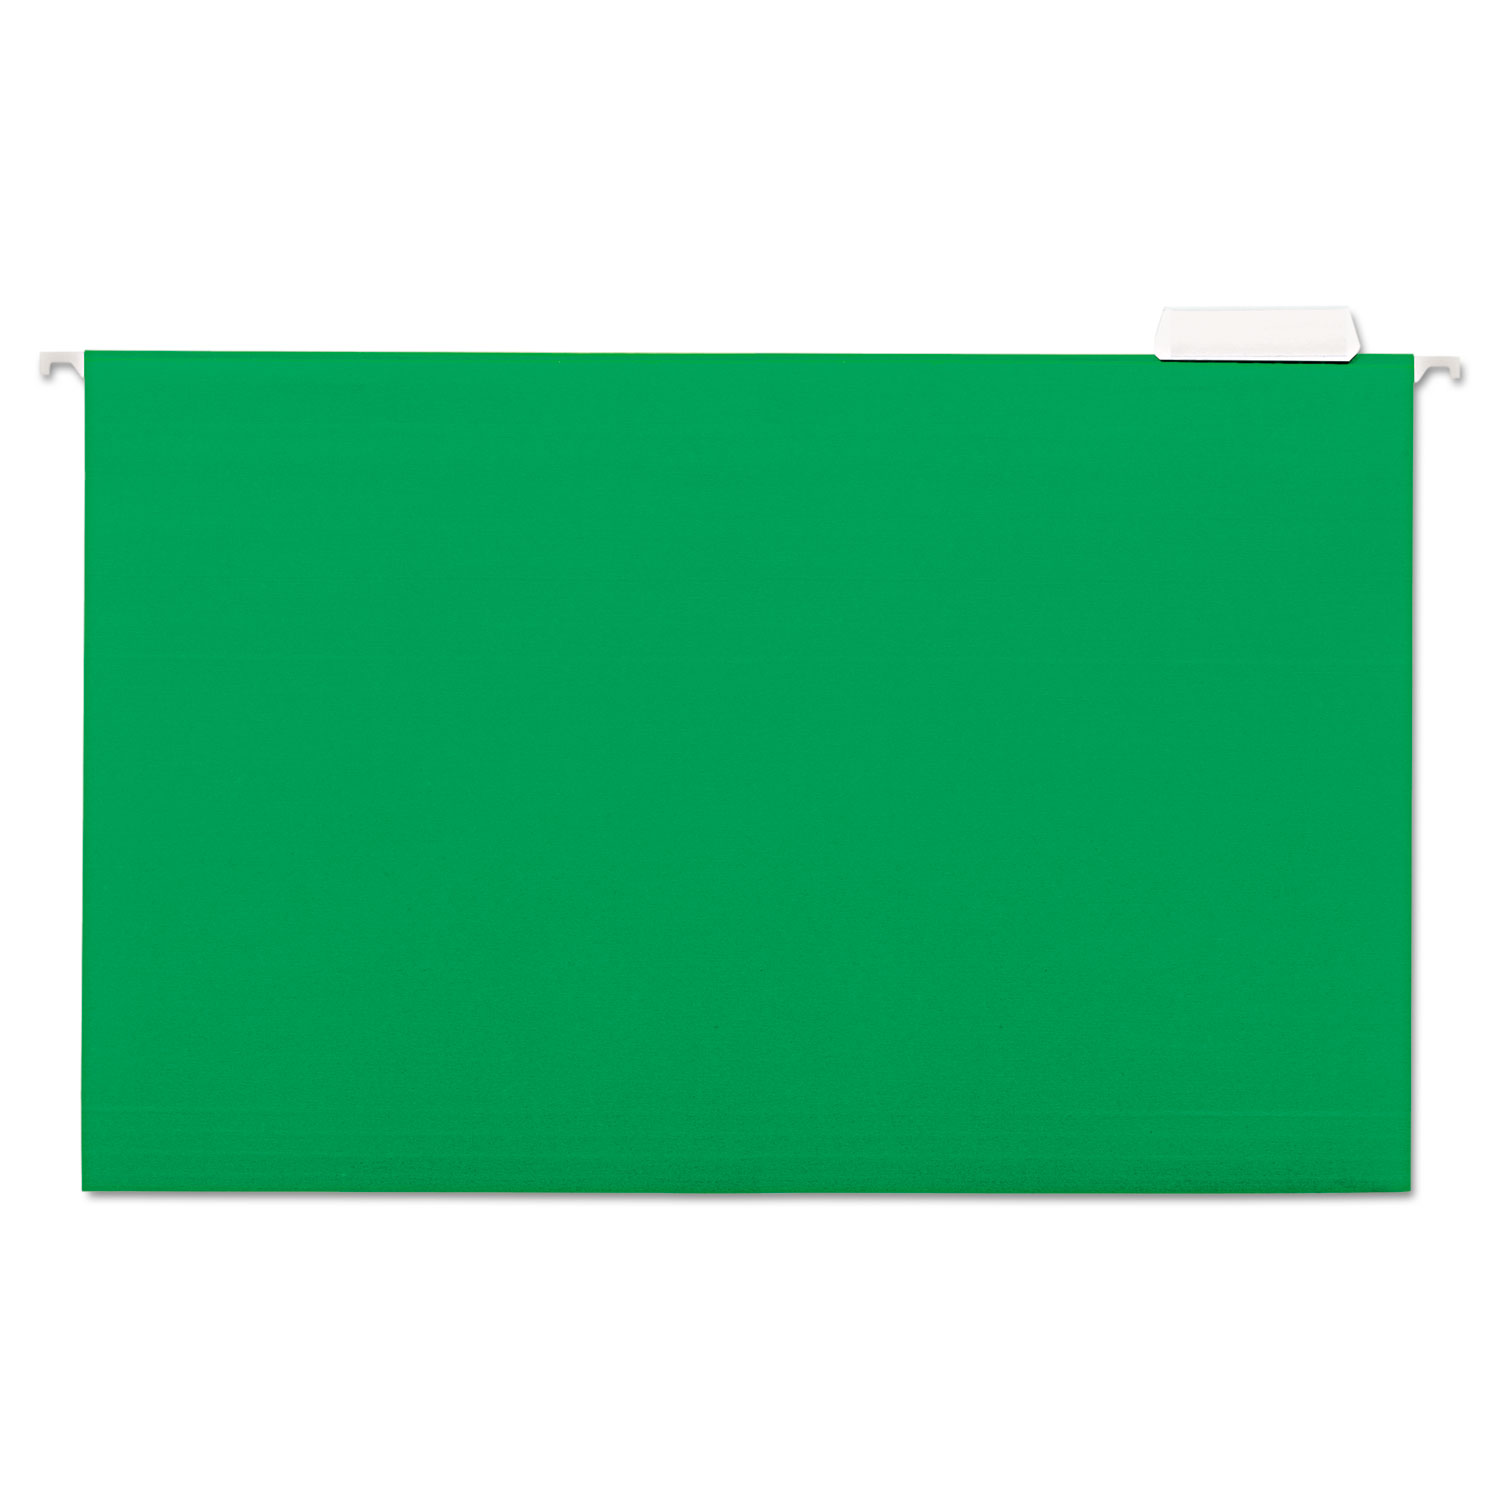 green file folders